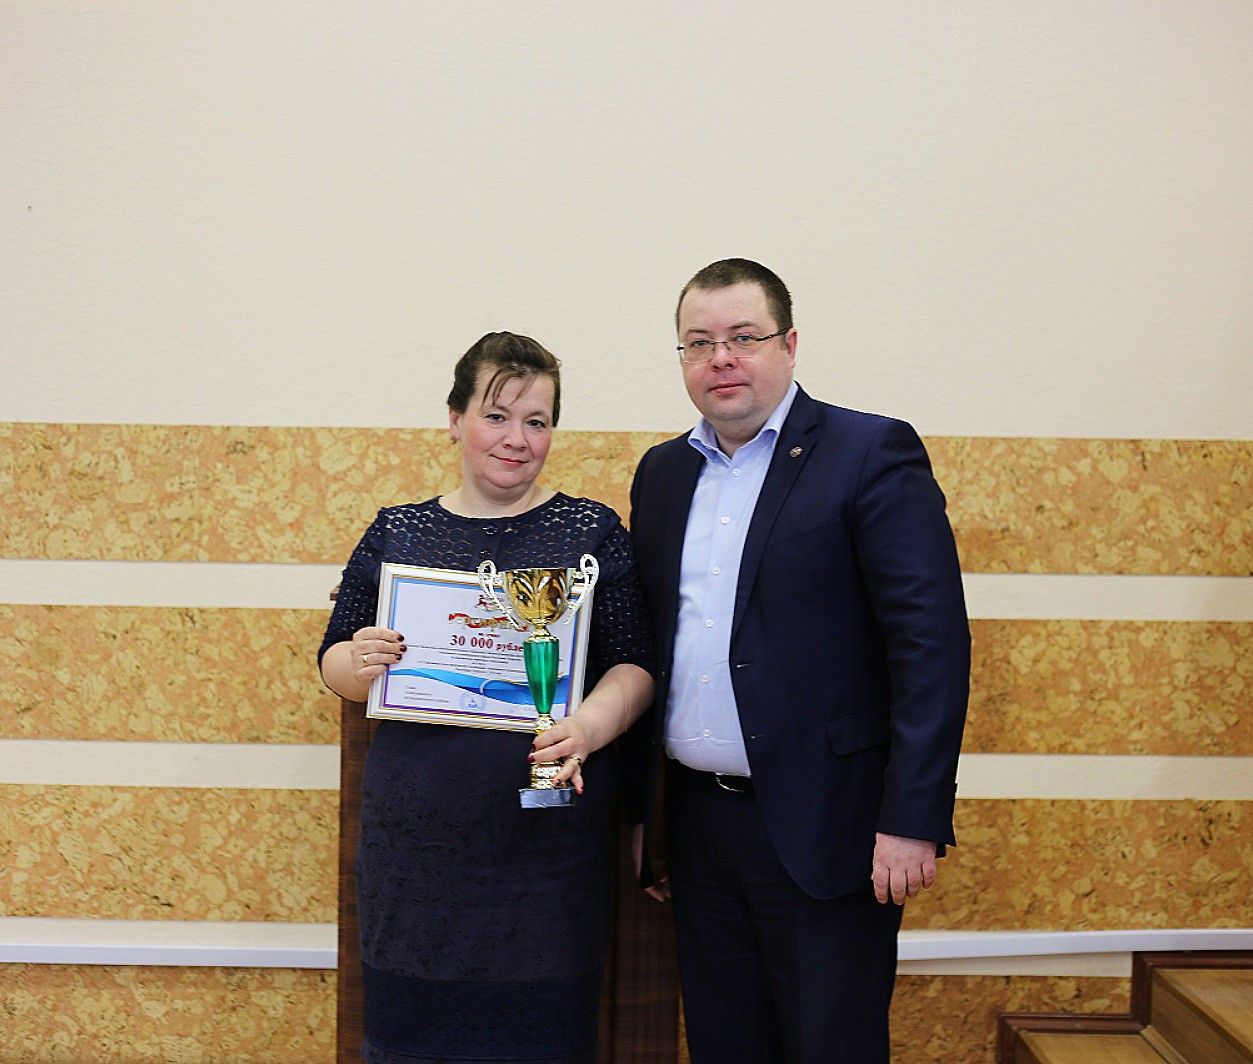 Сегодня в зале заседаний администрации района алексеевцев наградили за профессиональные успехи